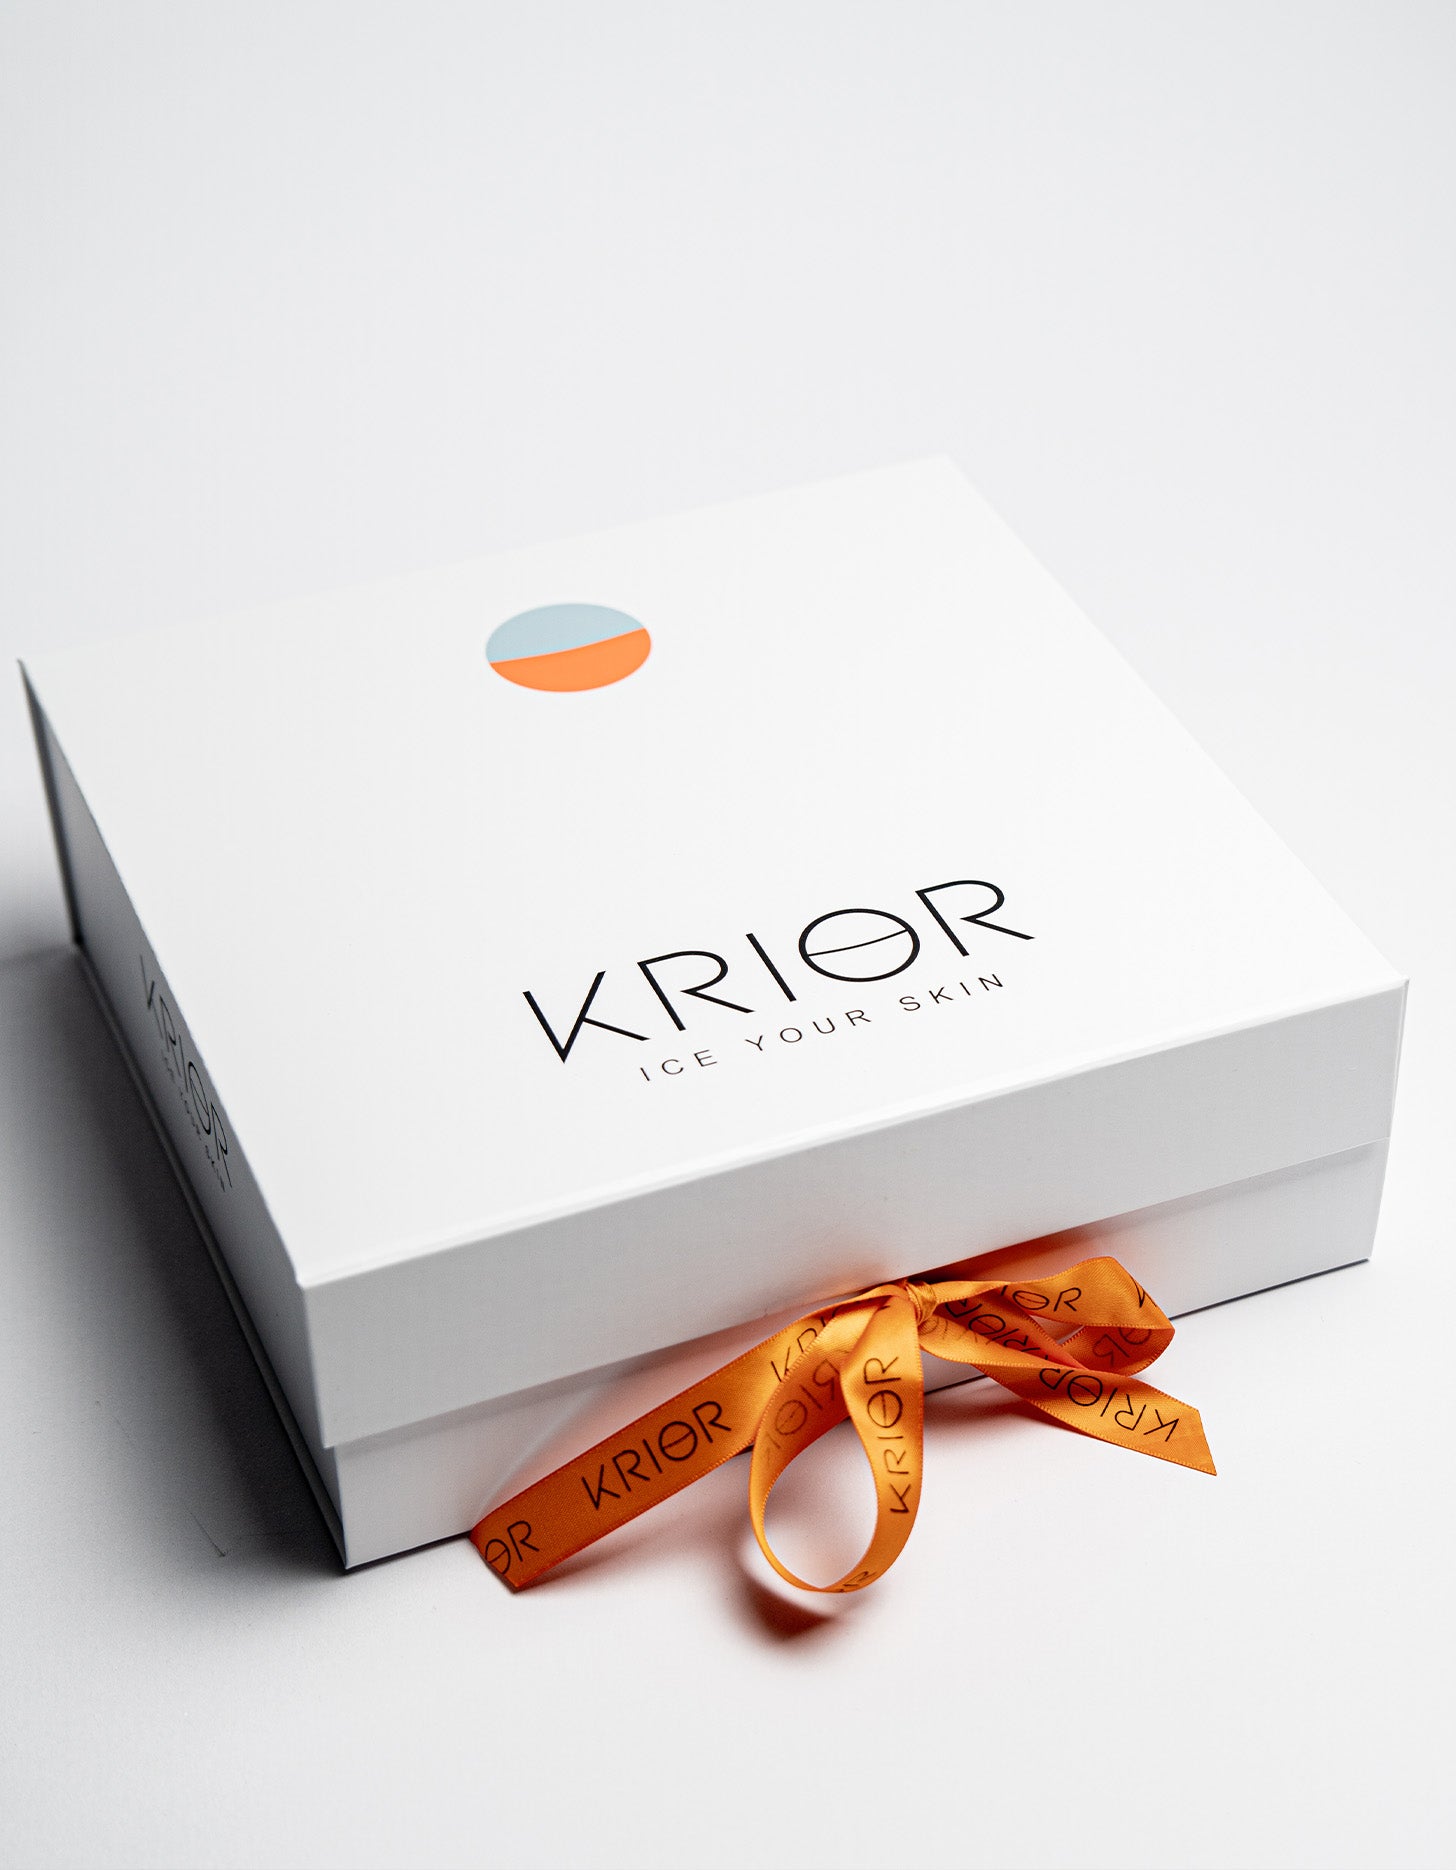 Krior Premium Skin Care Box